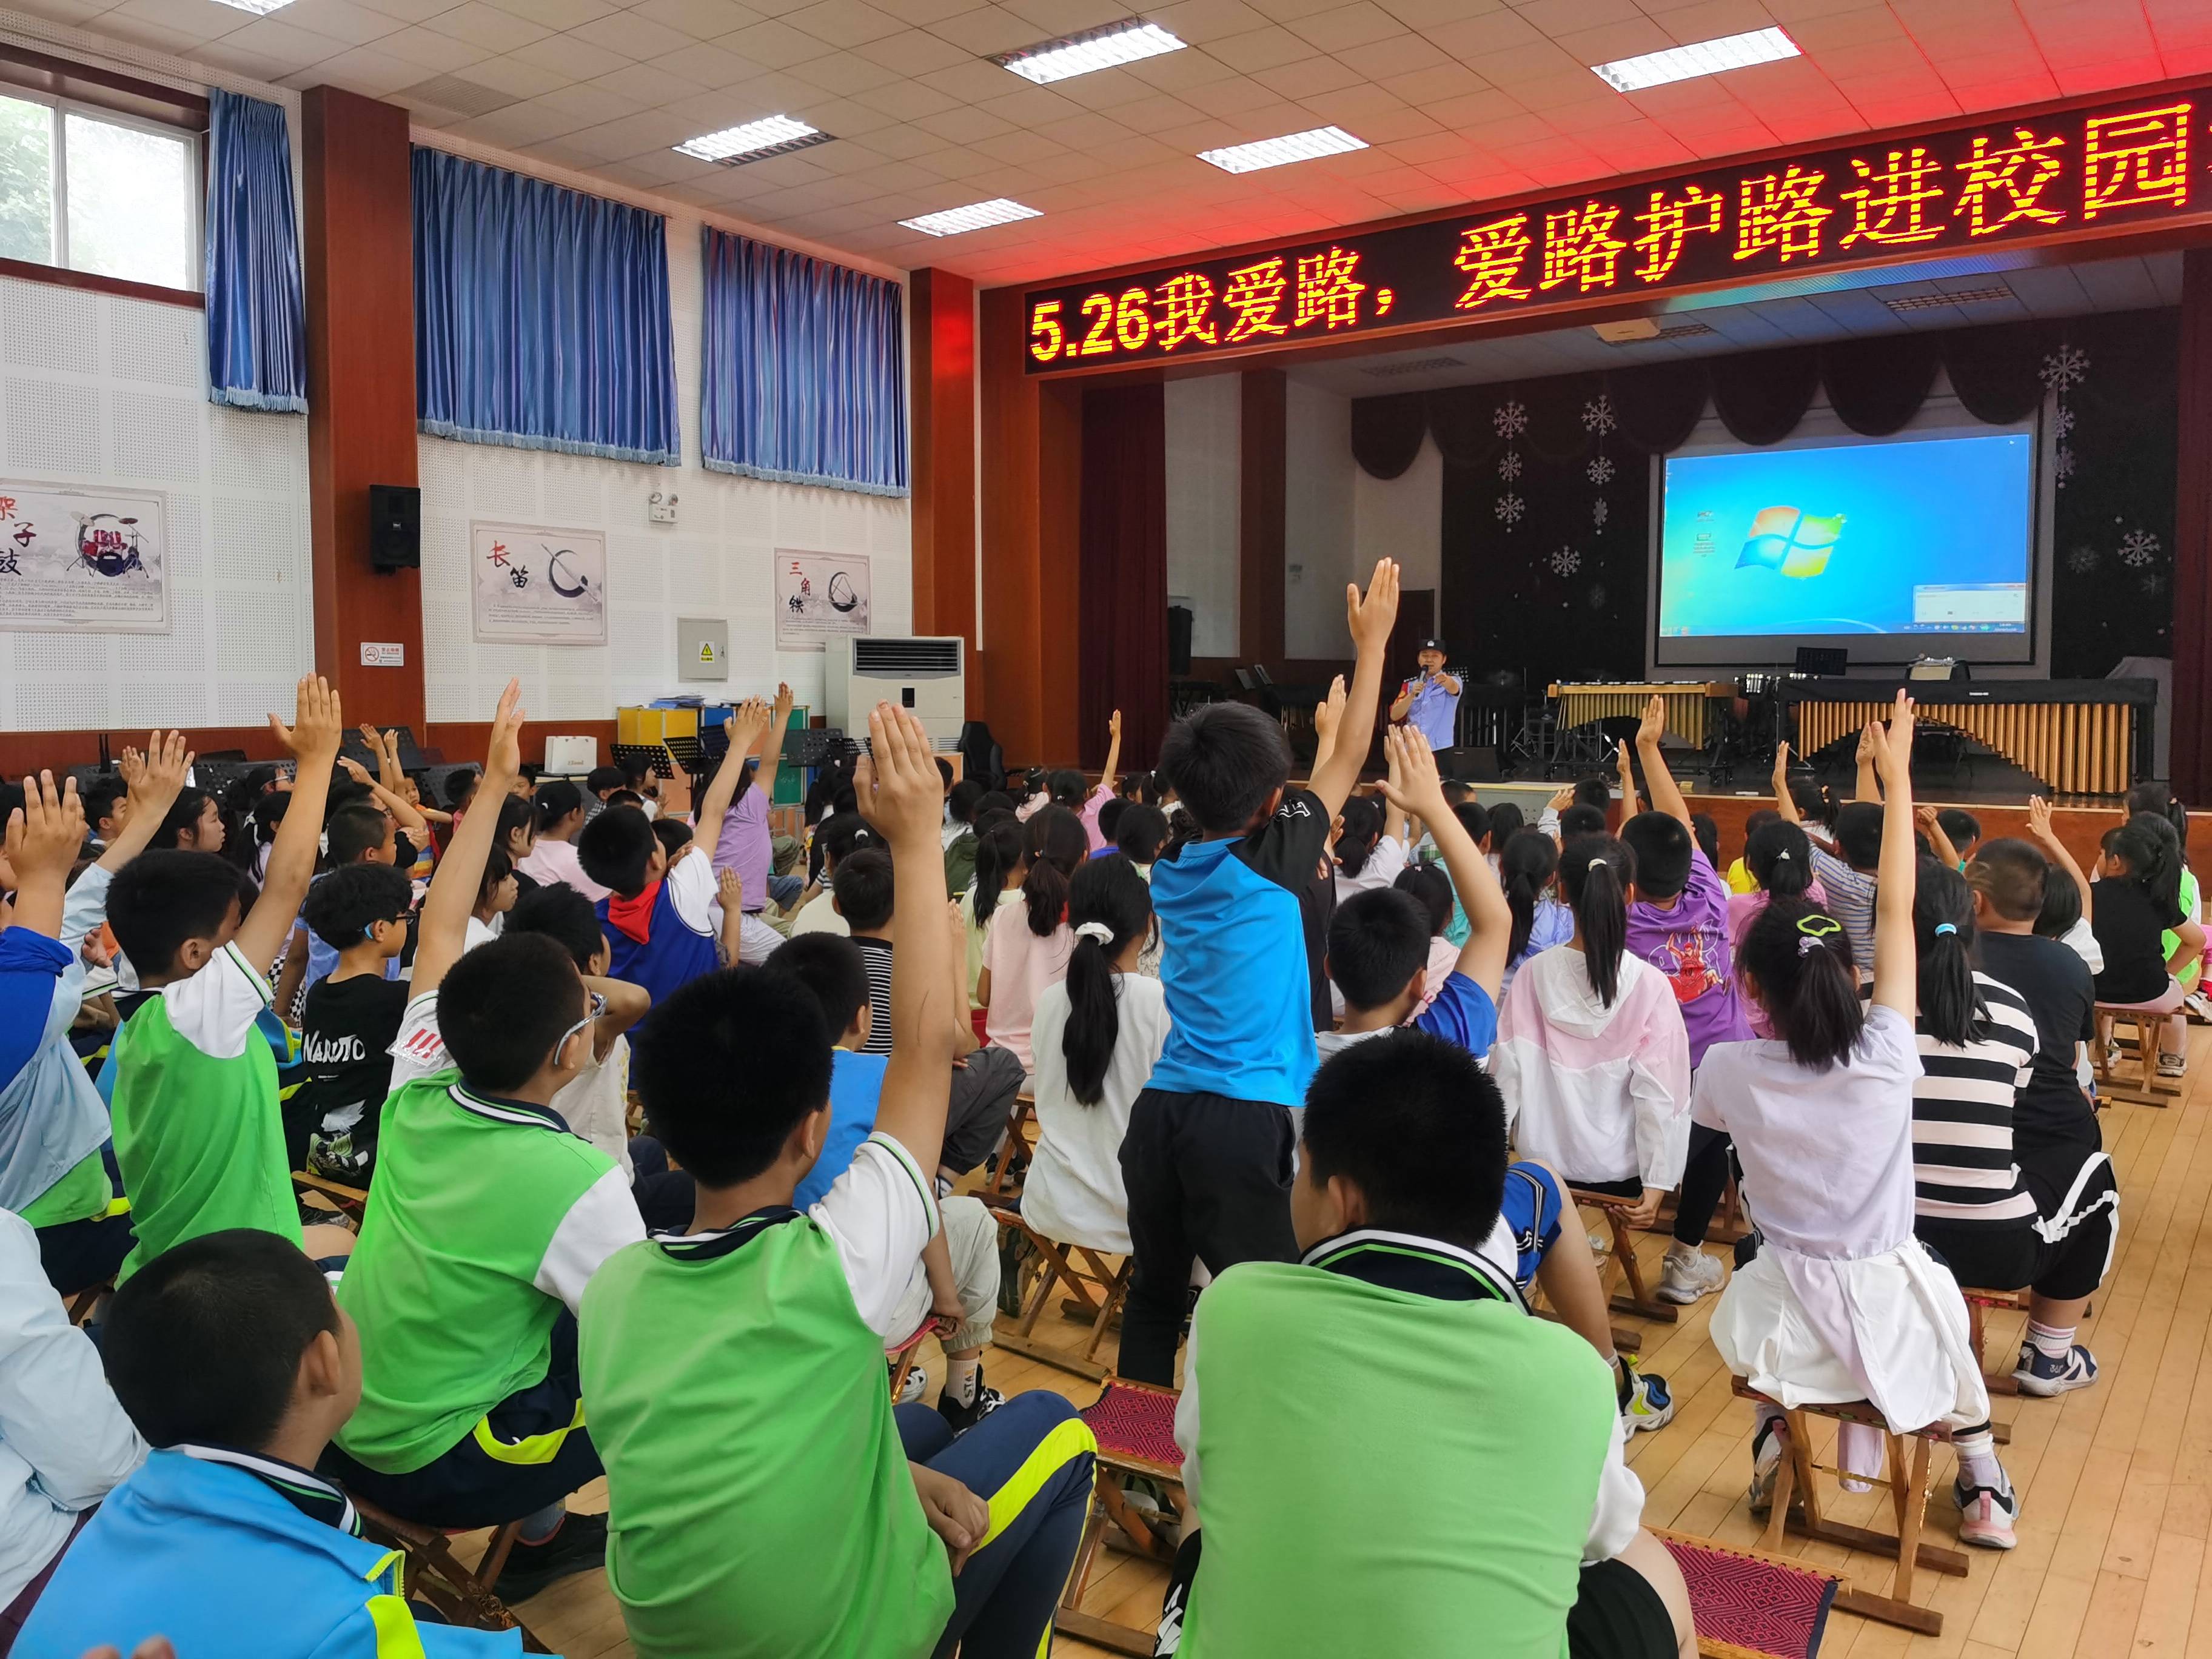 儿童节前夕 北京铁警深入站区开展安全出行宣传活动 六一